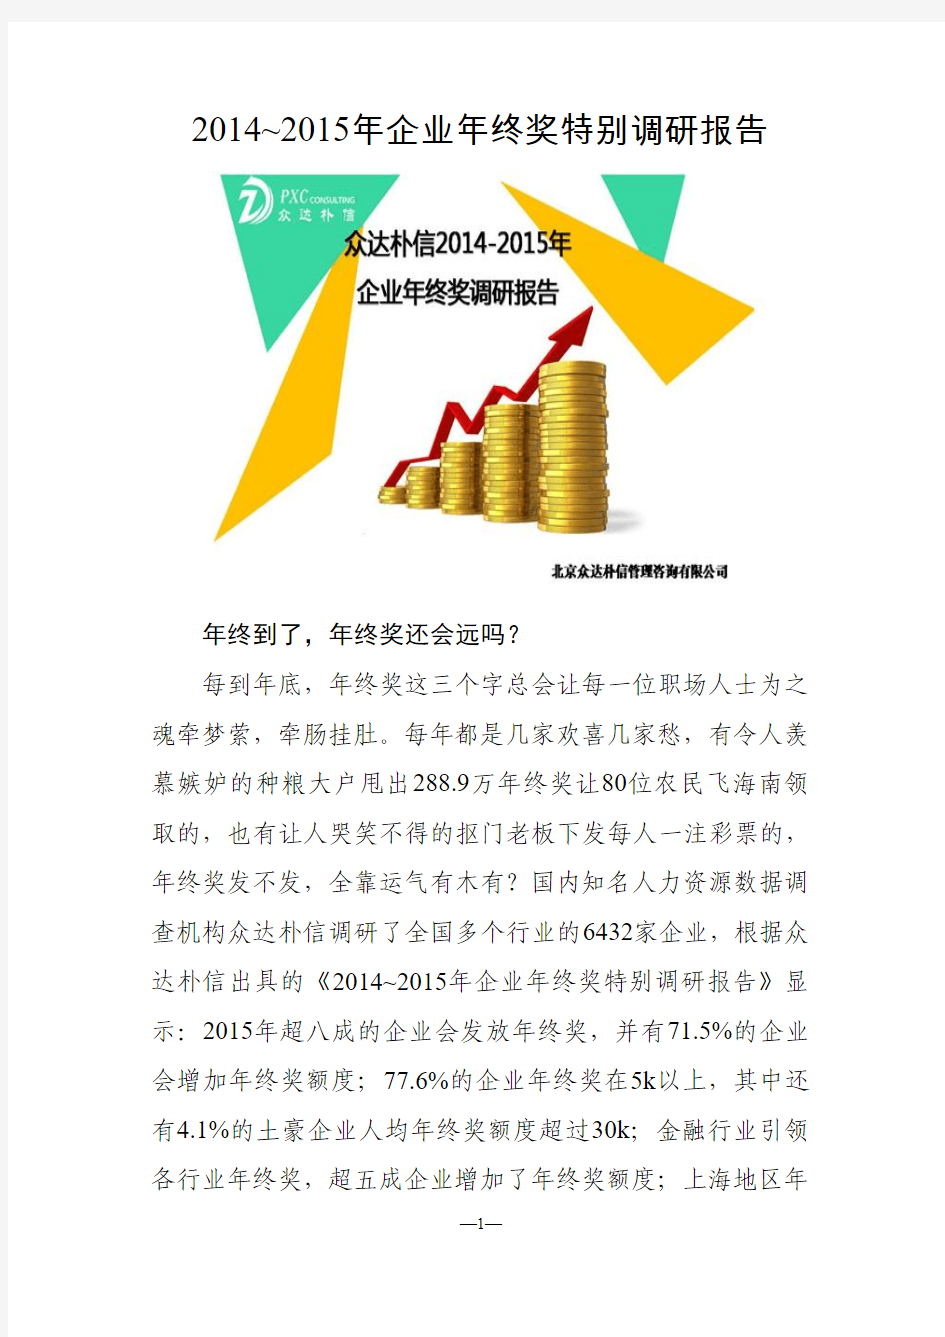 2014-2015年企业年终奖特别调研报告